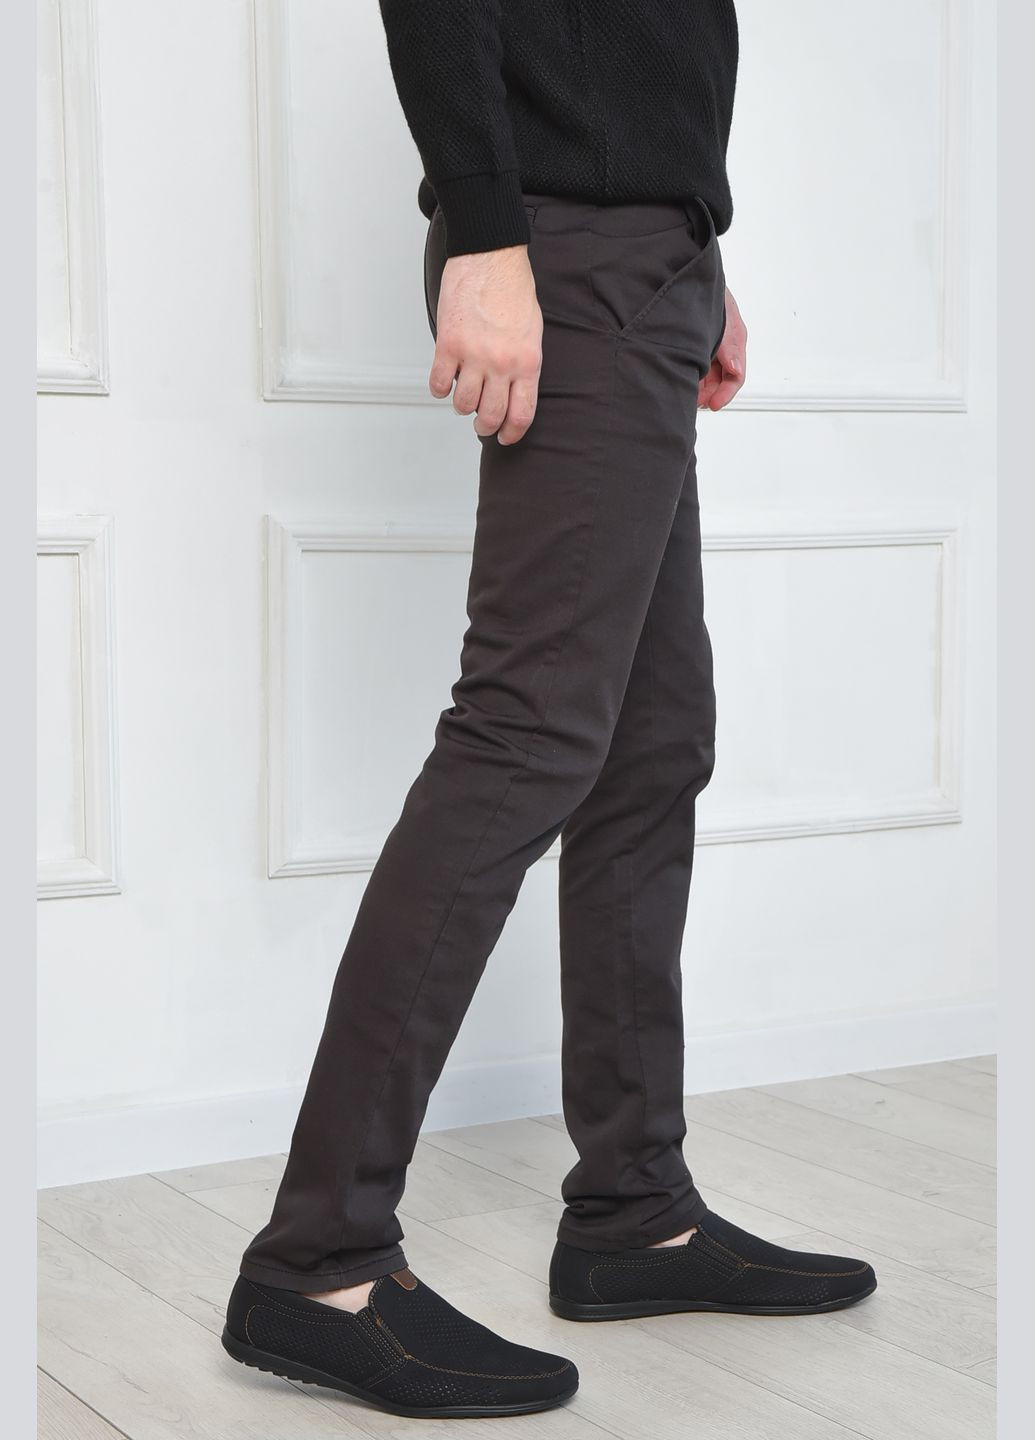 Темно-серые демисезонные прямые штаны мужские темно-серого цвета Let's Shop